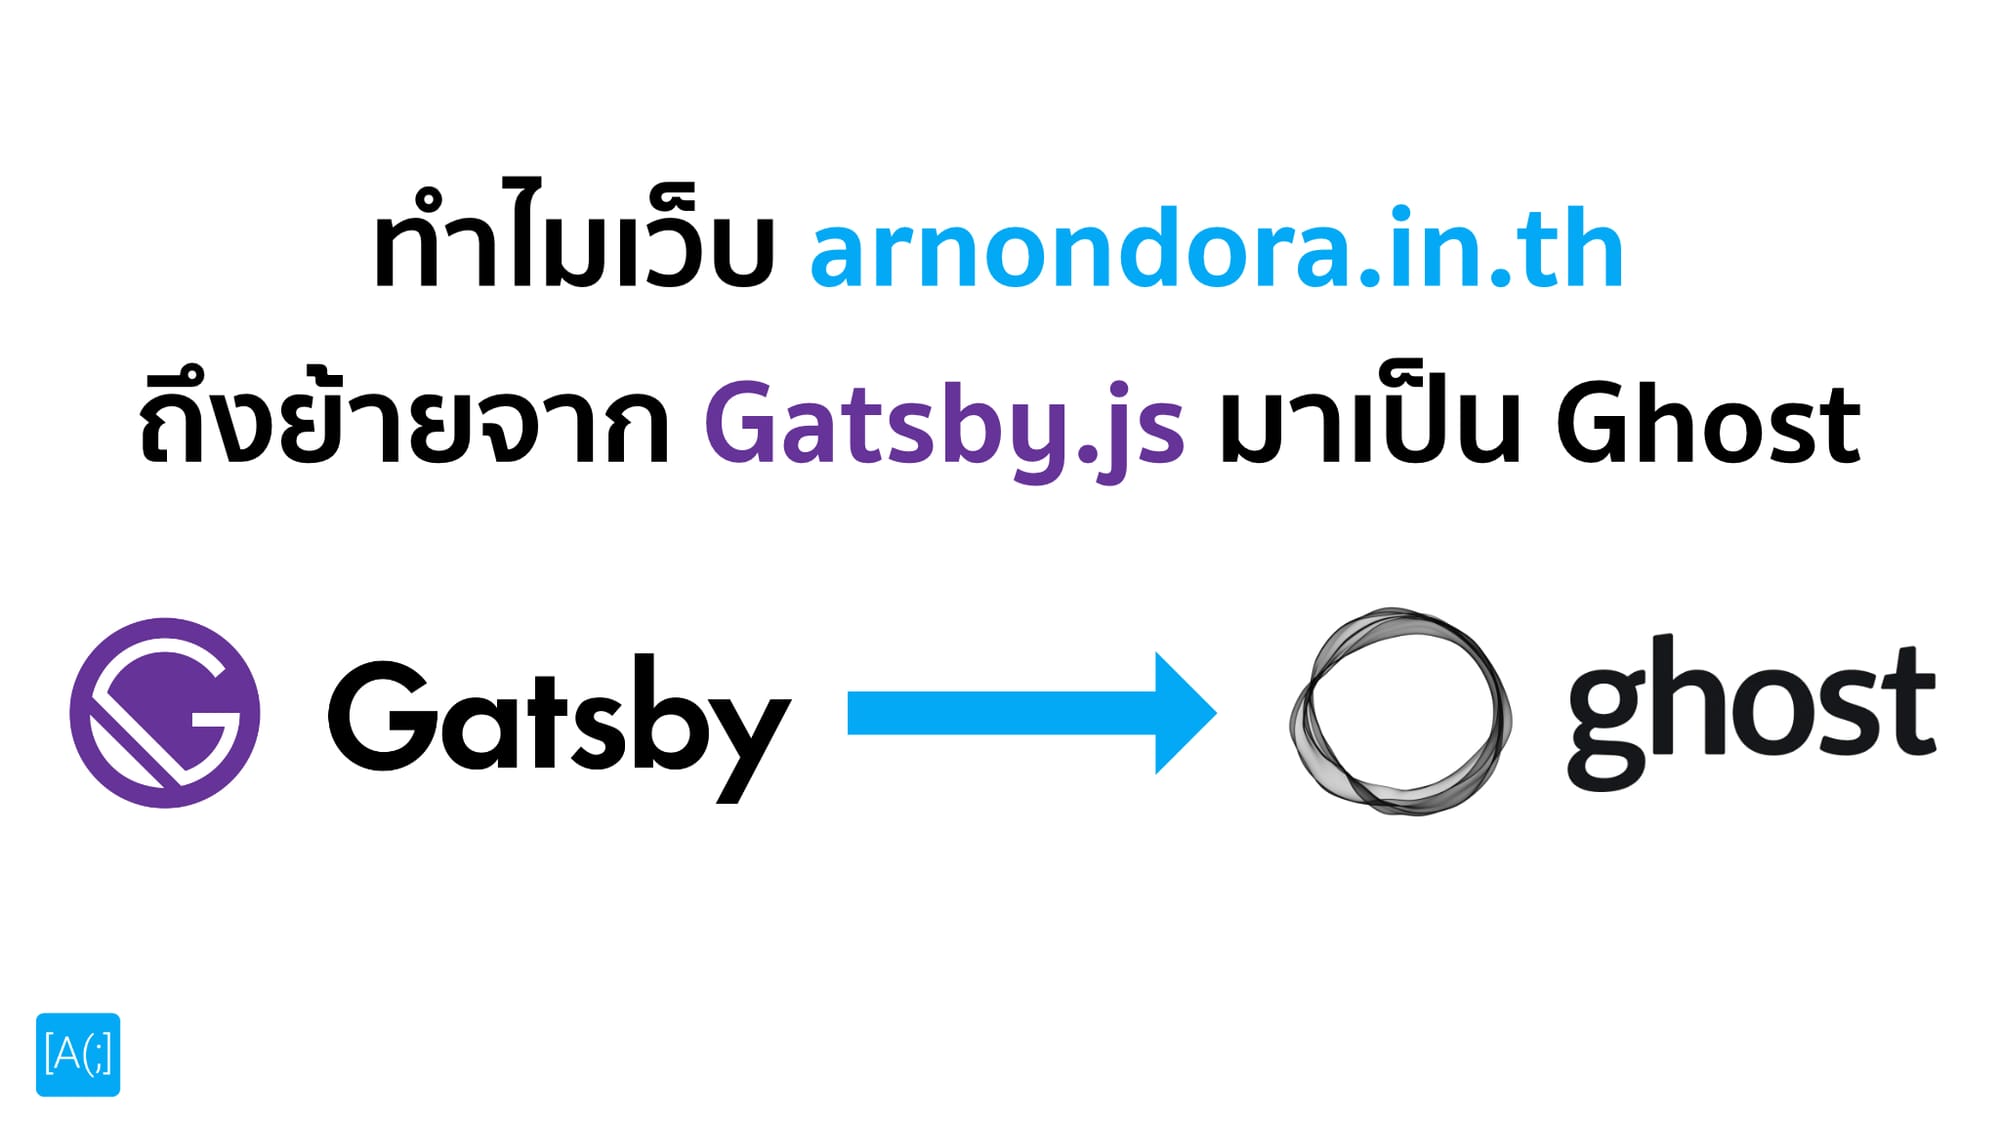 ทำไมเว็บ arnondora.in.th ถึงย้ายจาก Gatsby.js มาเป็น Ghost